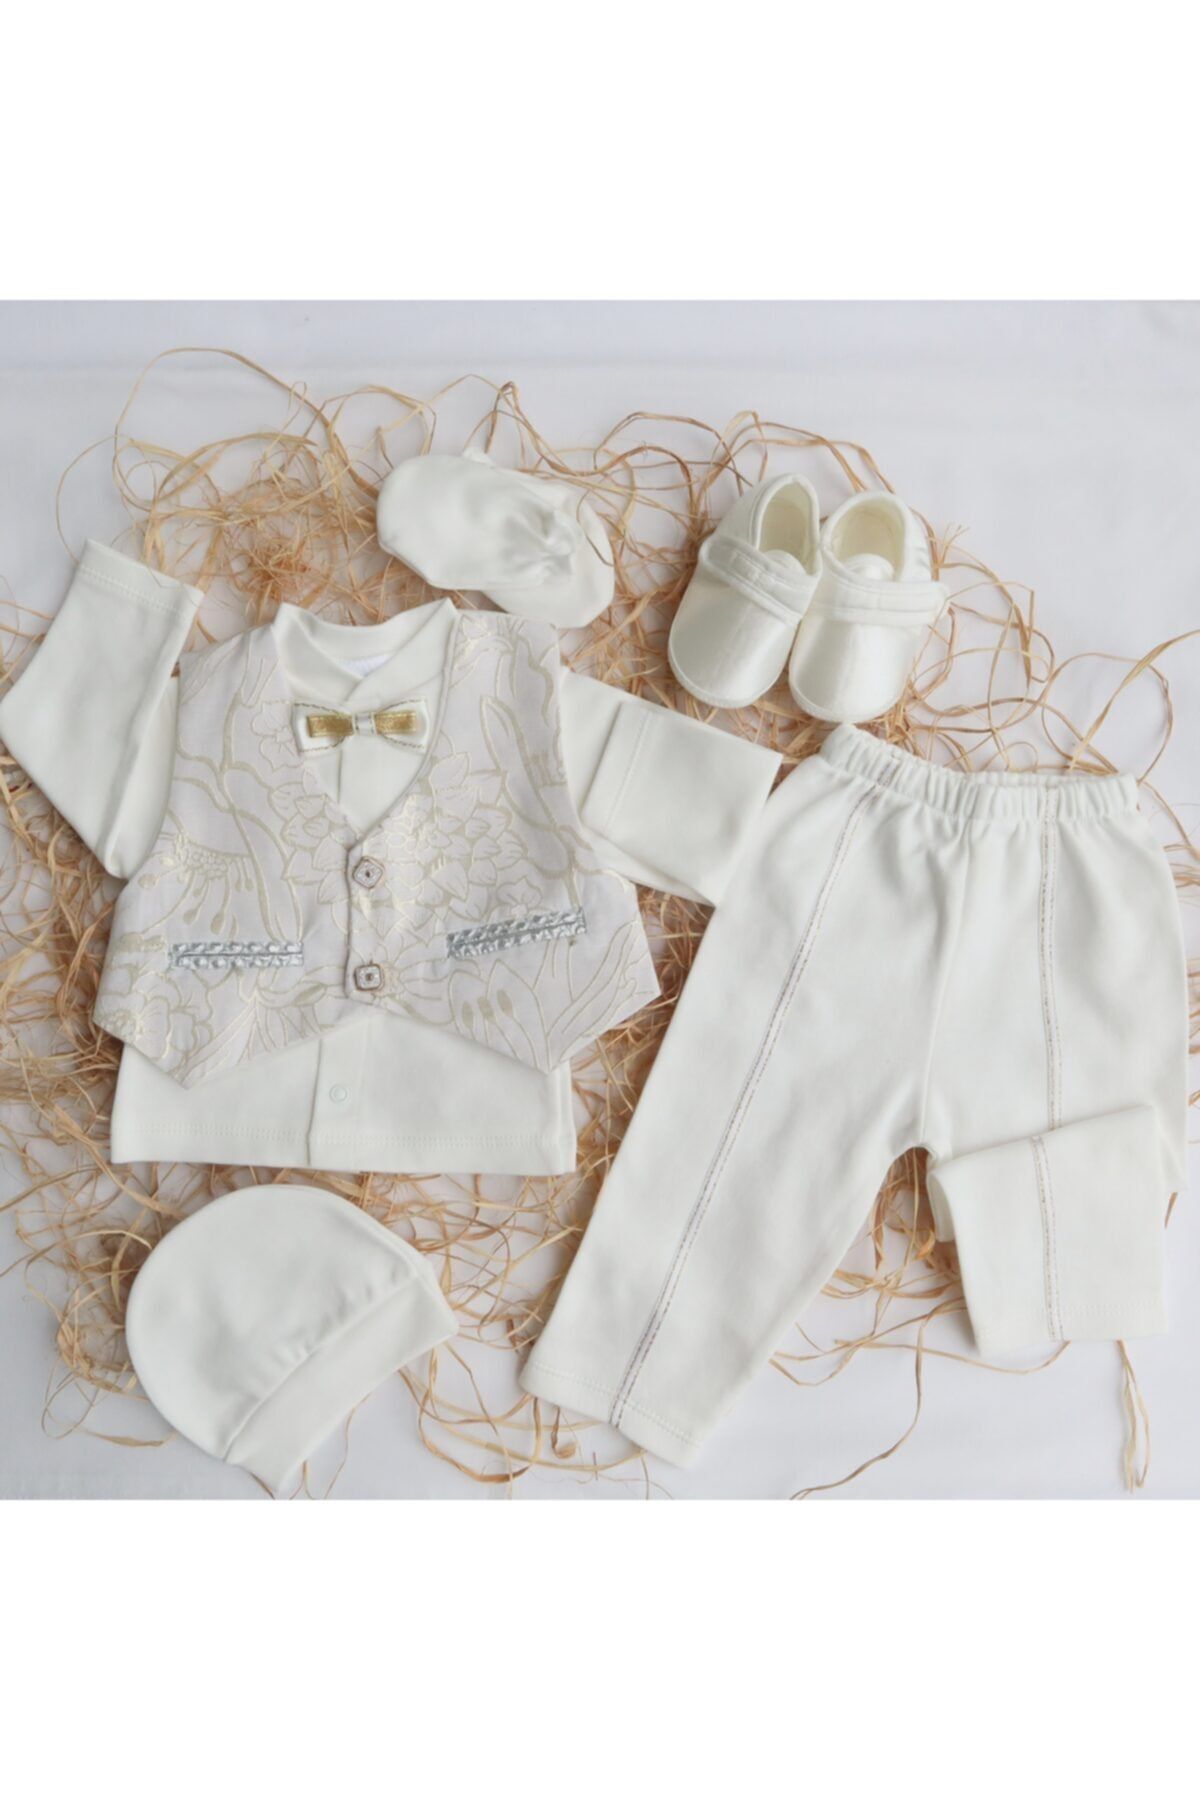 bebe's Yelekli Mevlüt Takımı Gün Kıyafeti